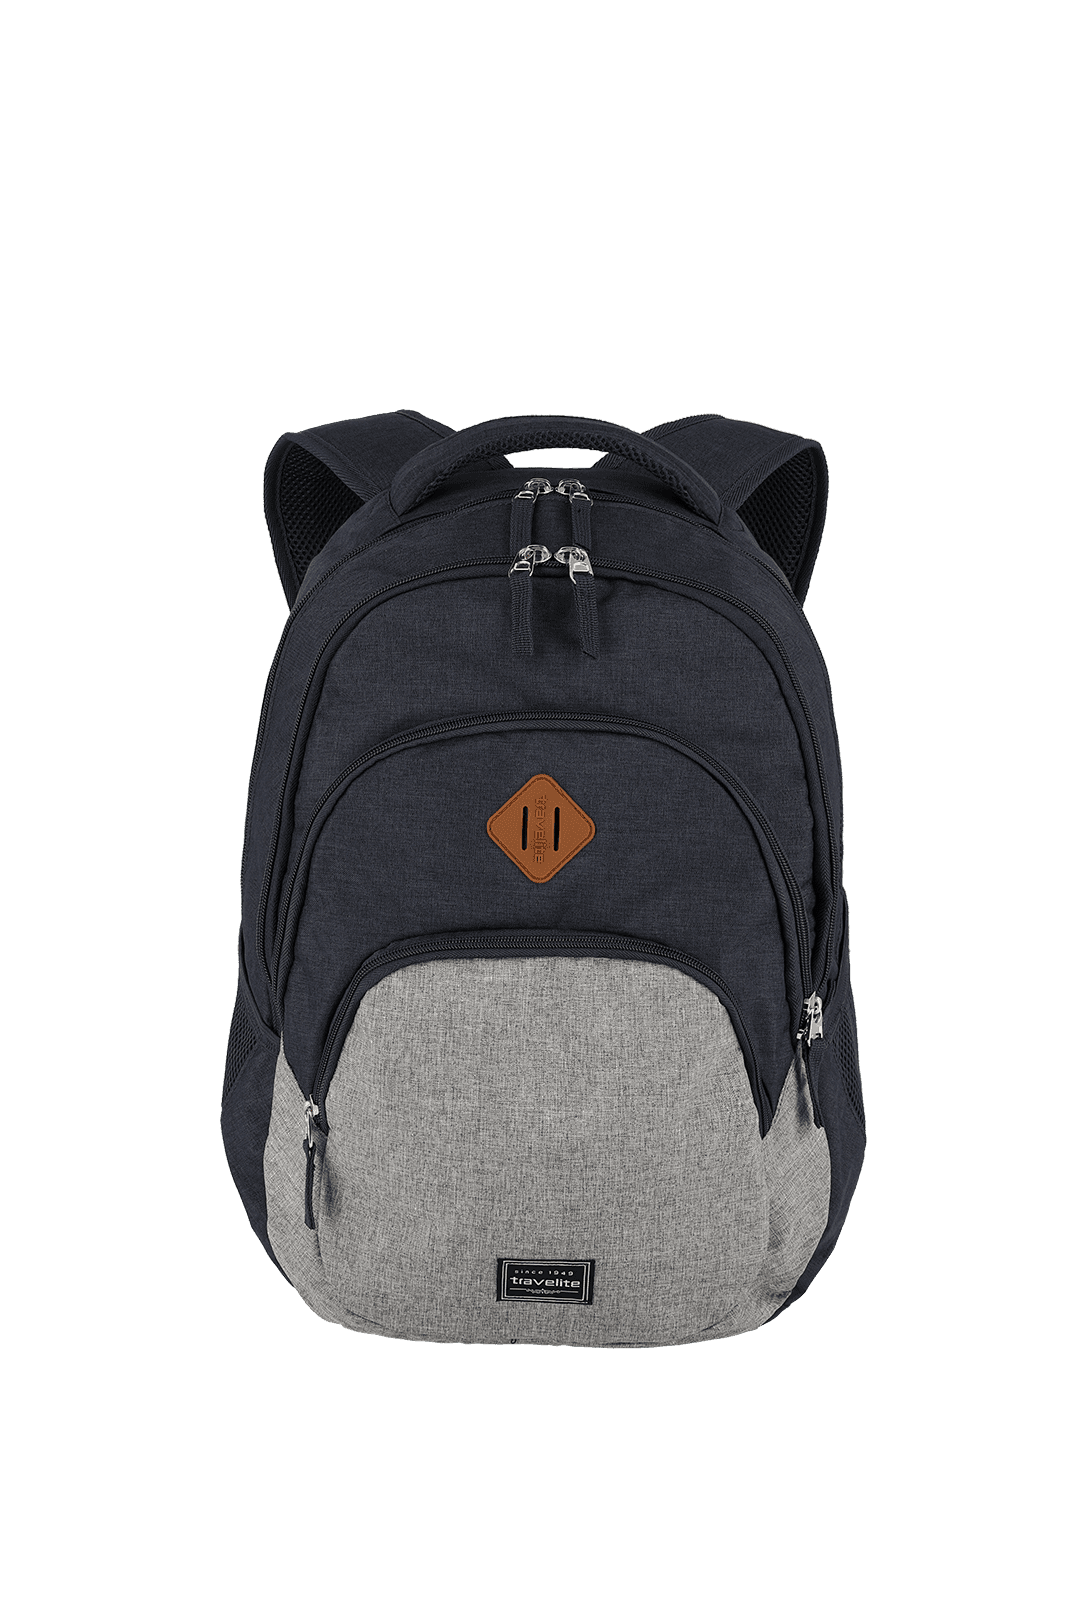 BASICS backpack in navy/ - travelite